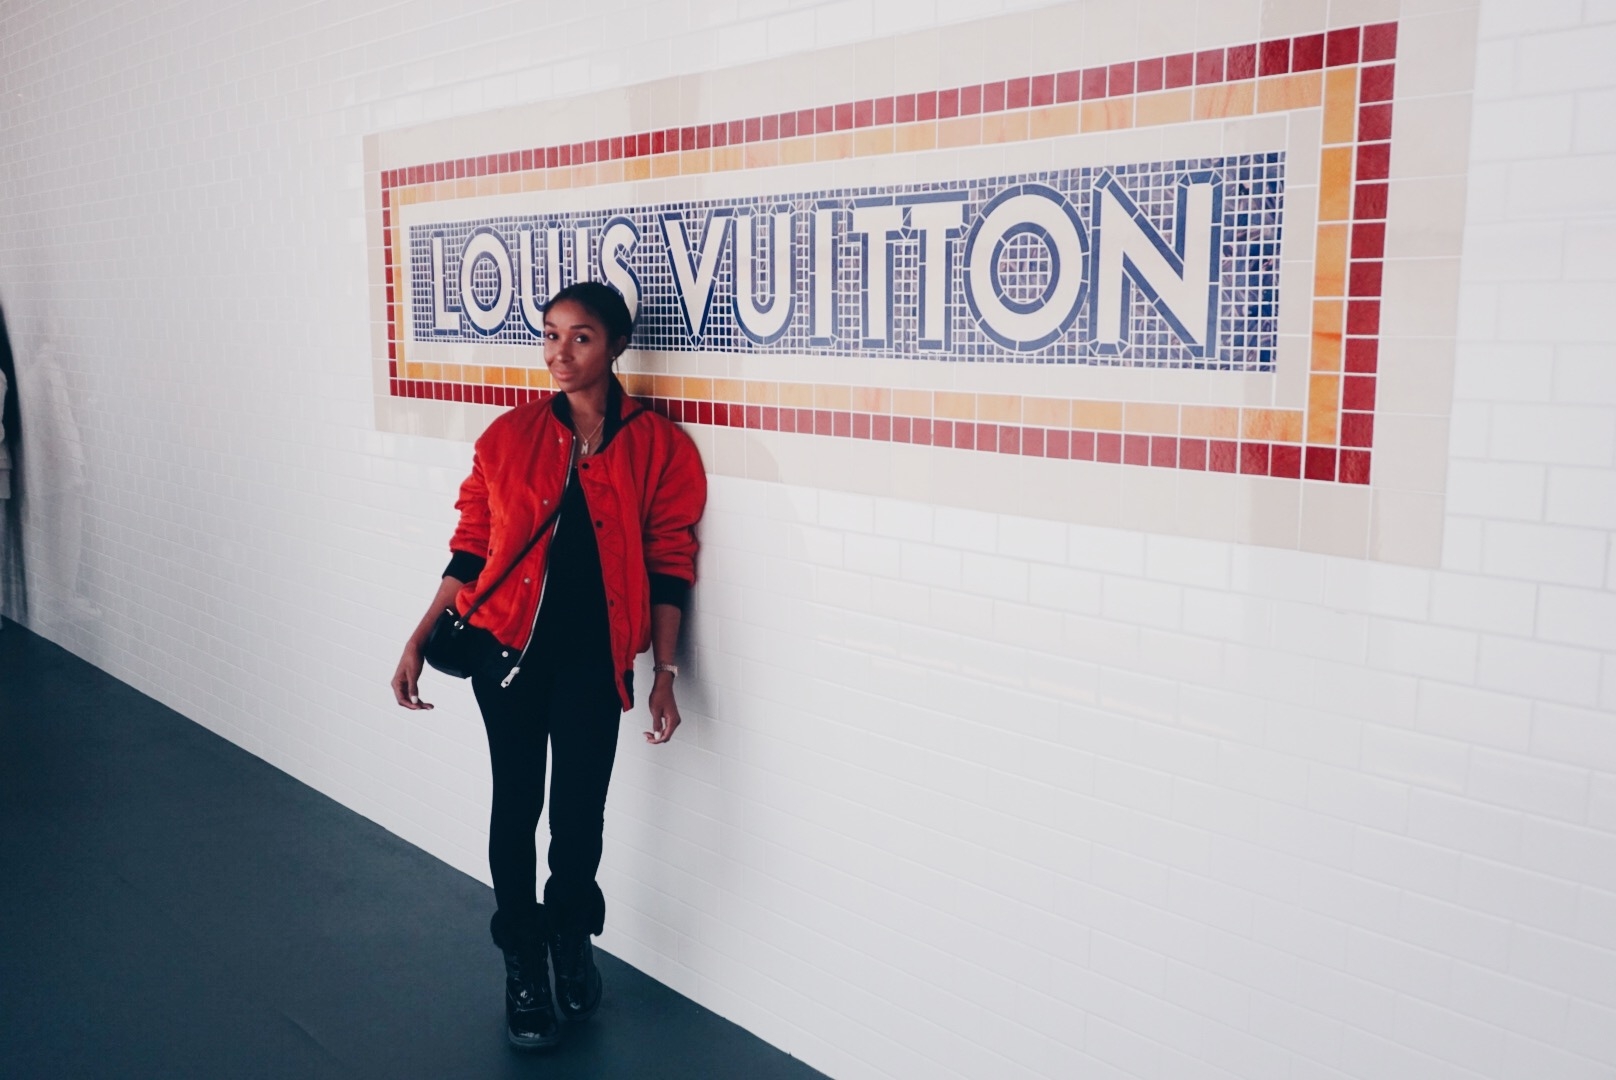 VOLEZ, VOGUEZ, VOYAGEZ  Louis Vuitton Exhibition NYC - A Day In